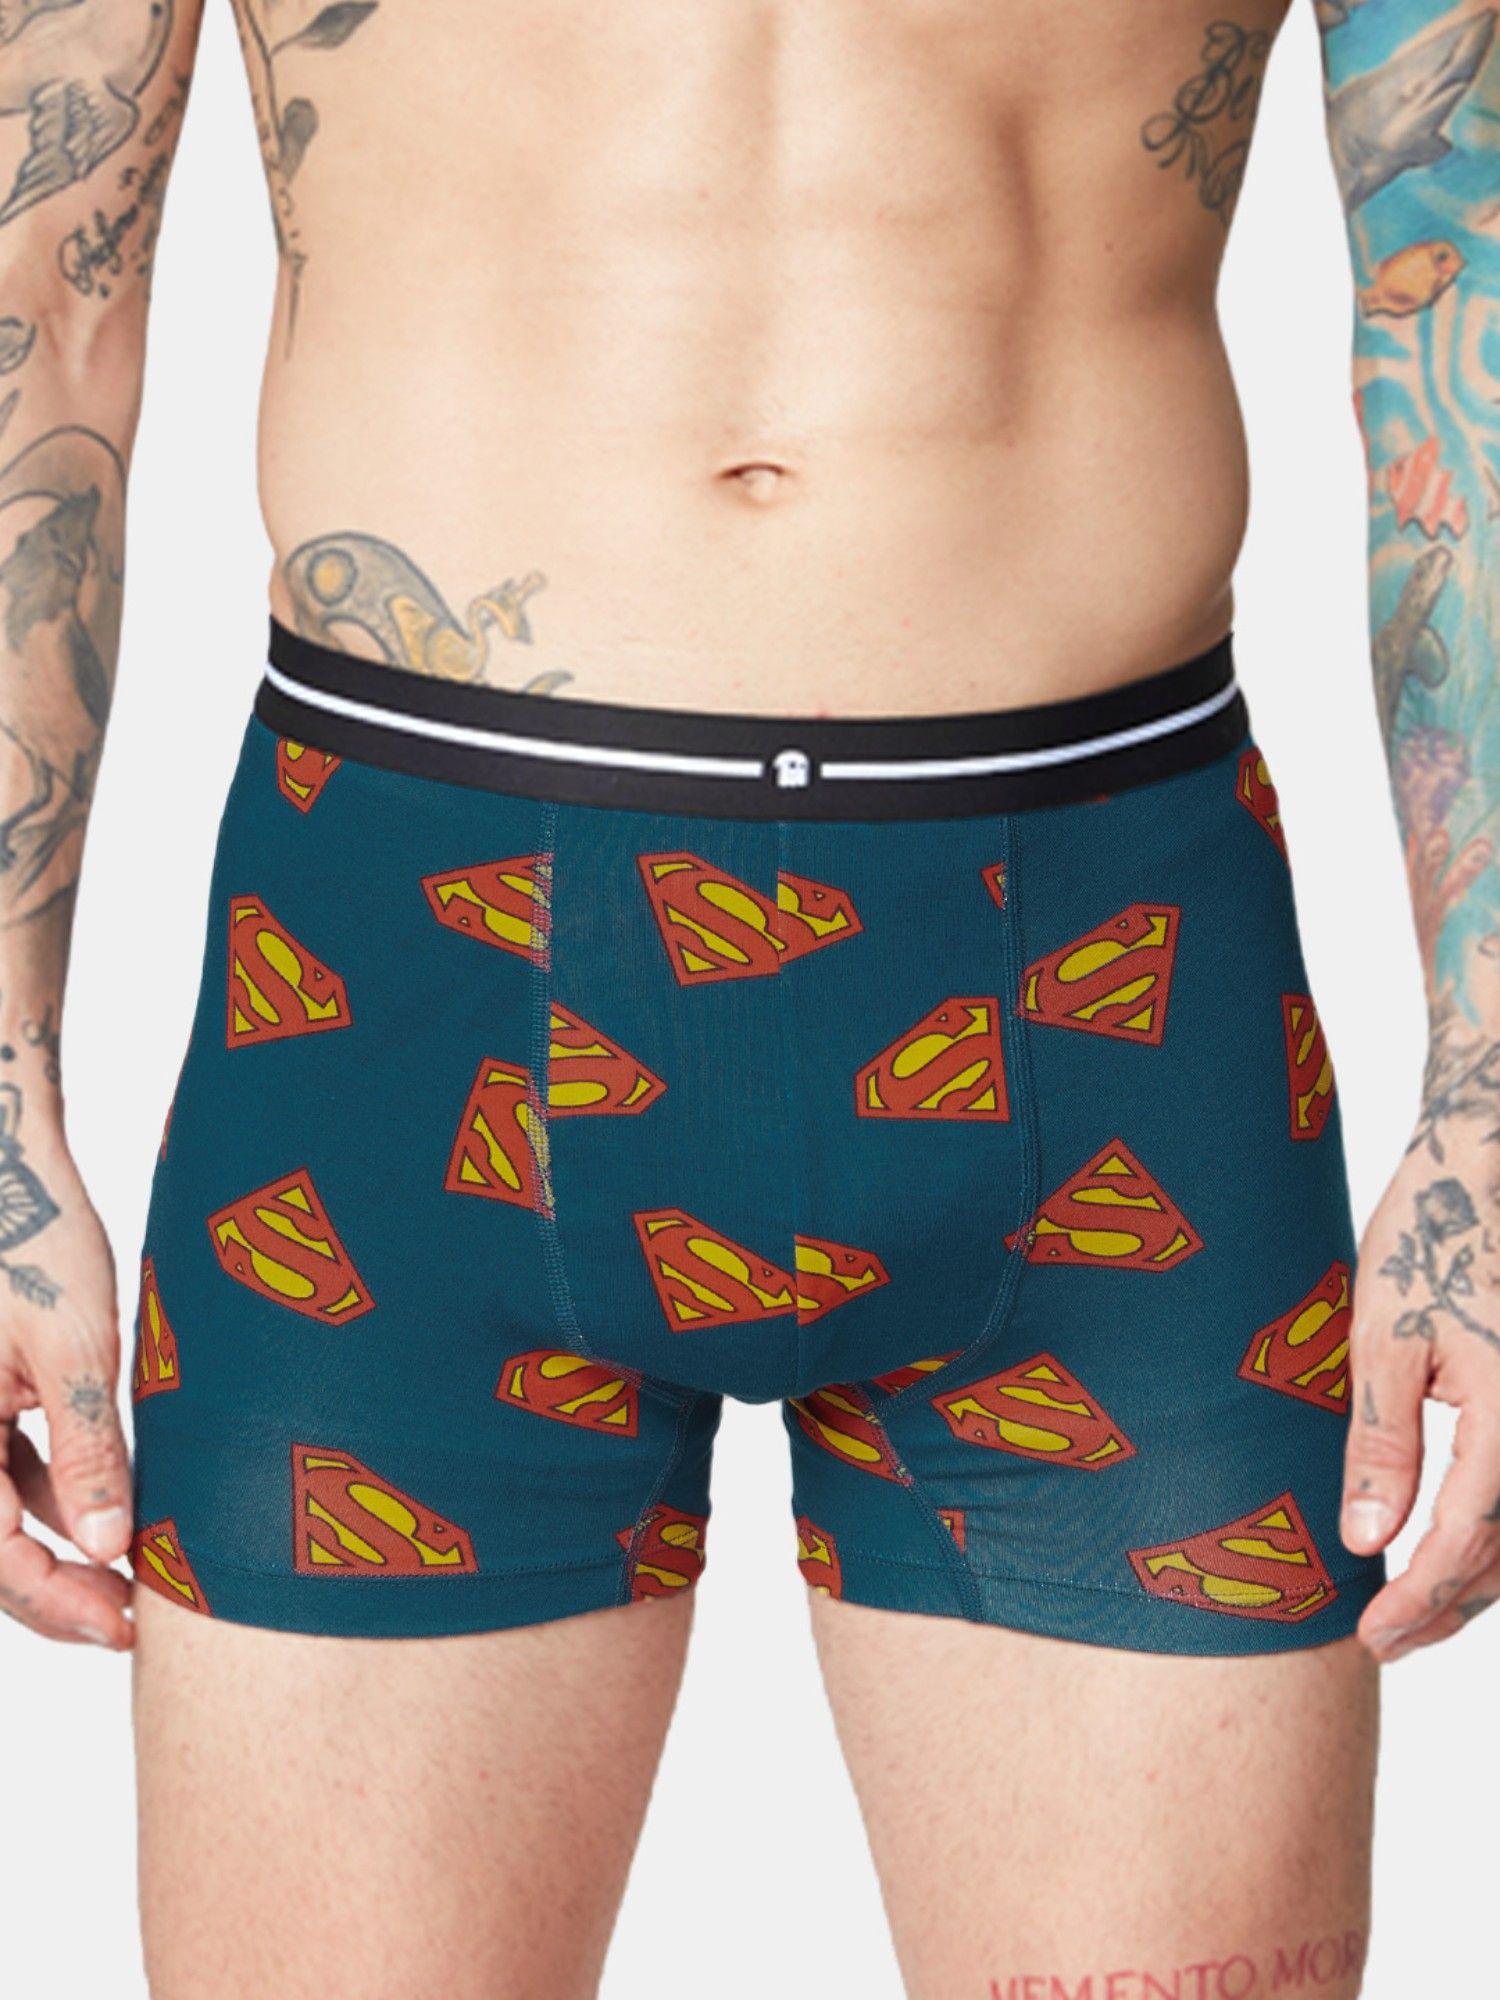 superman- logo pattern men trunks underwear blue